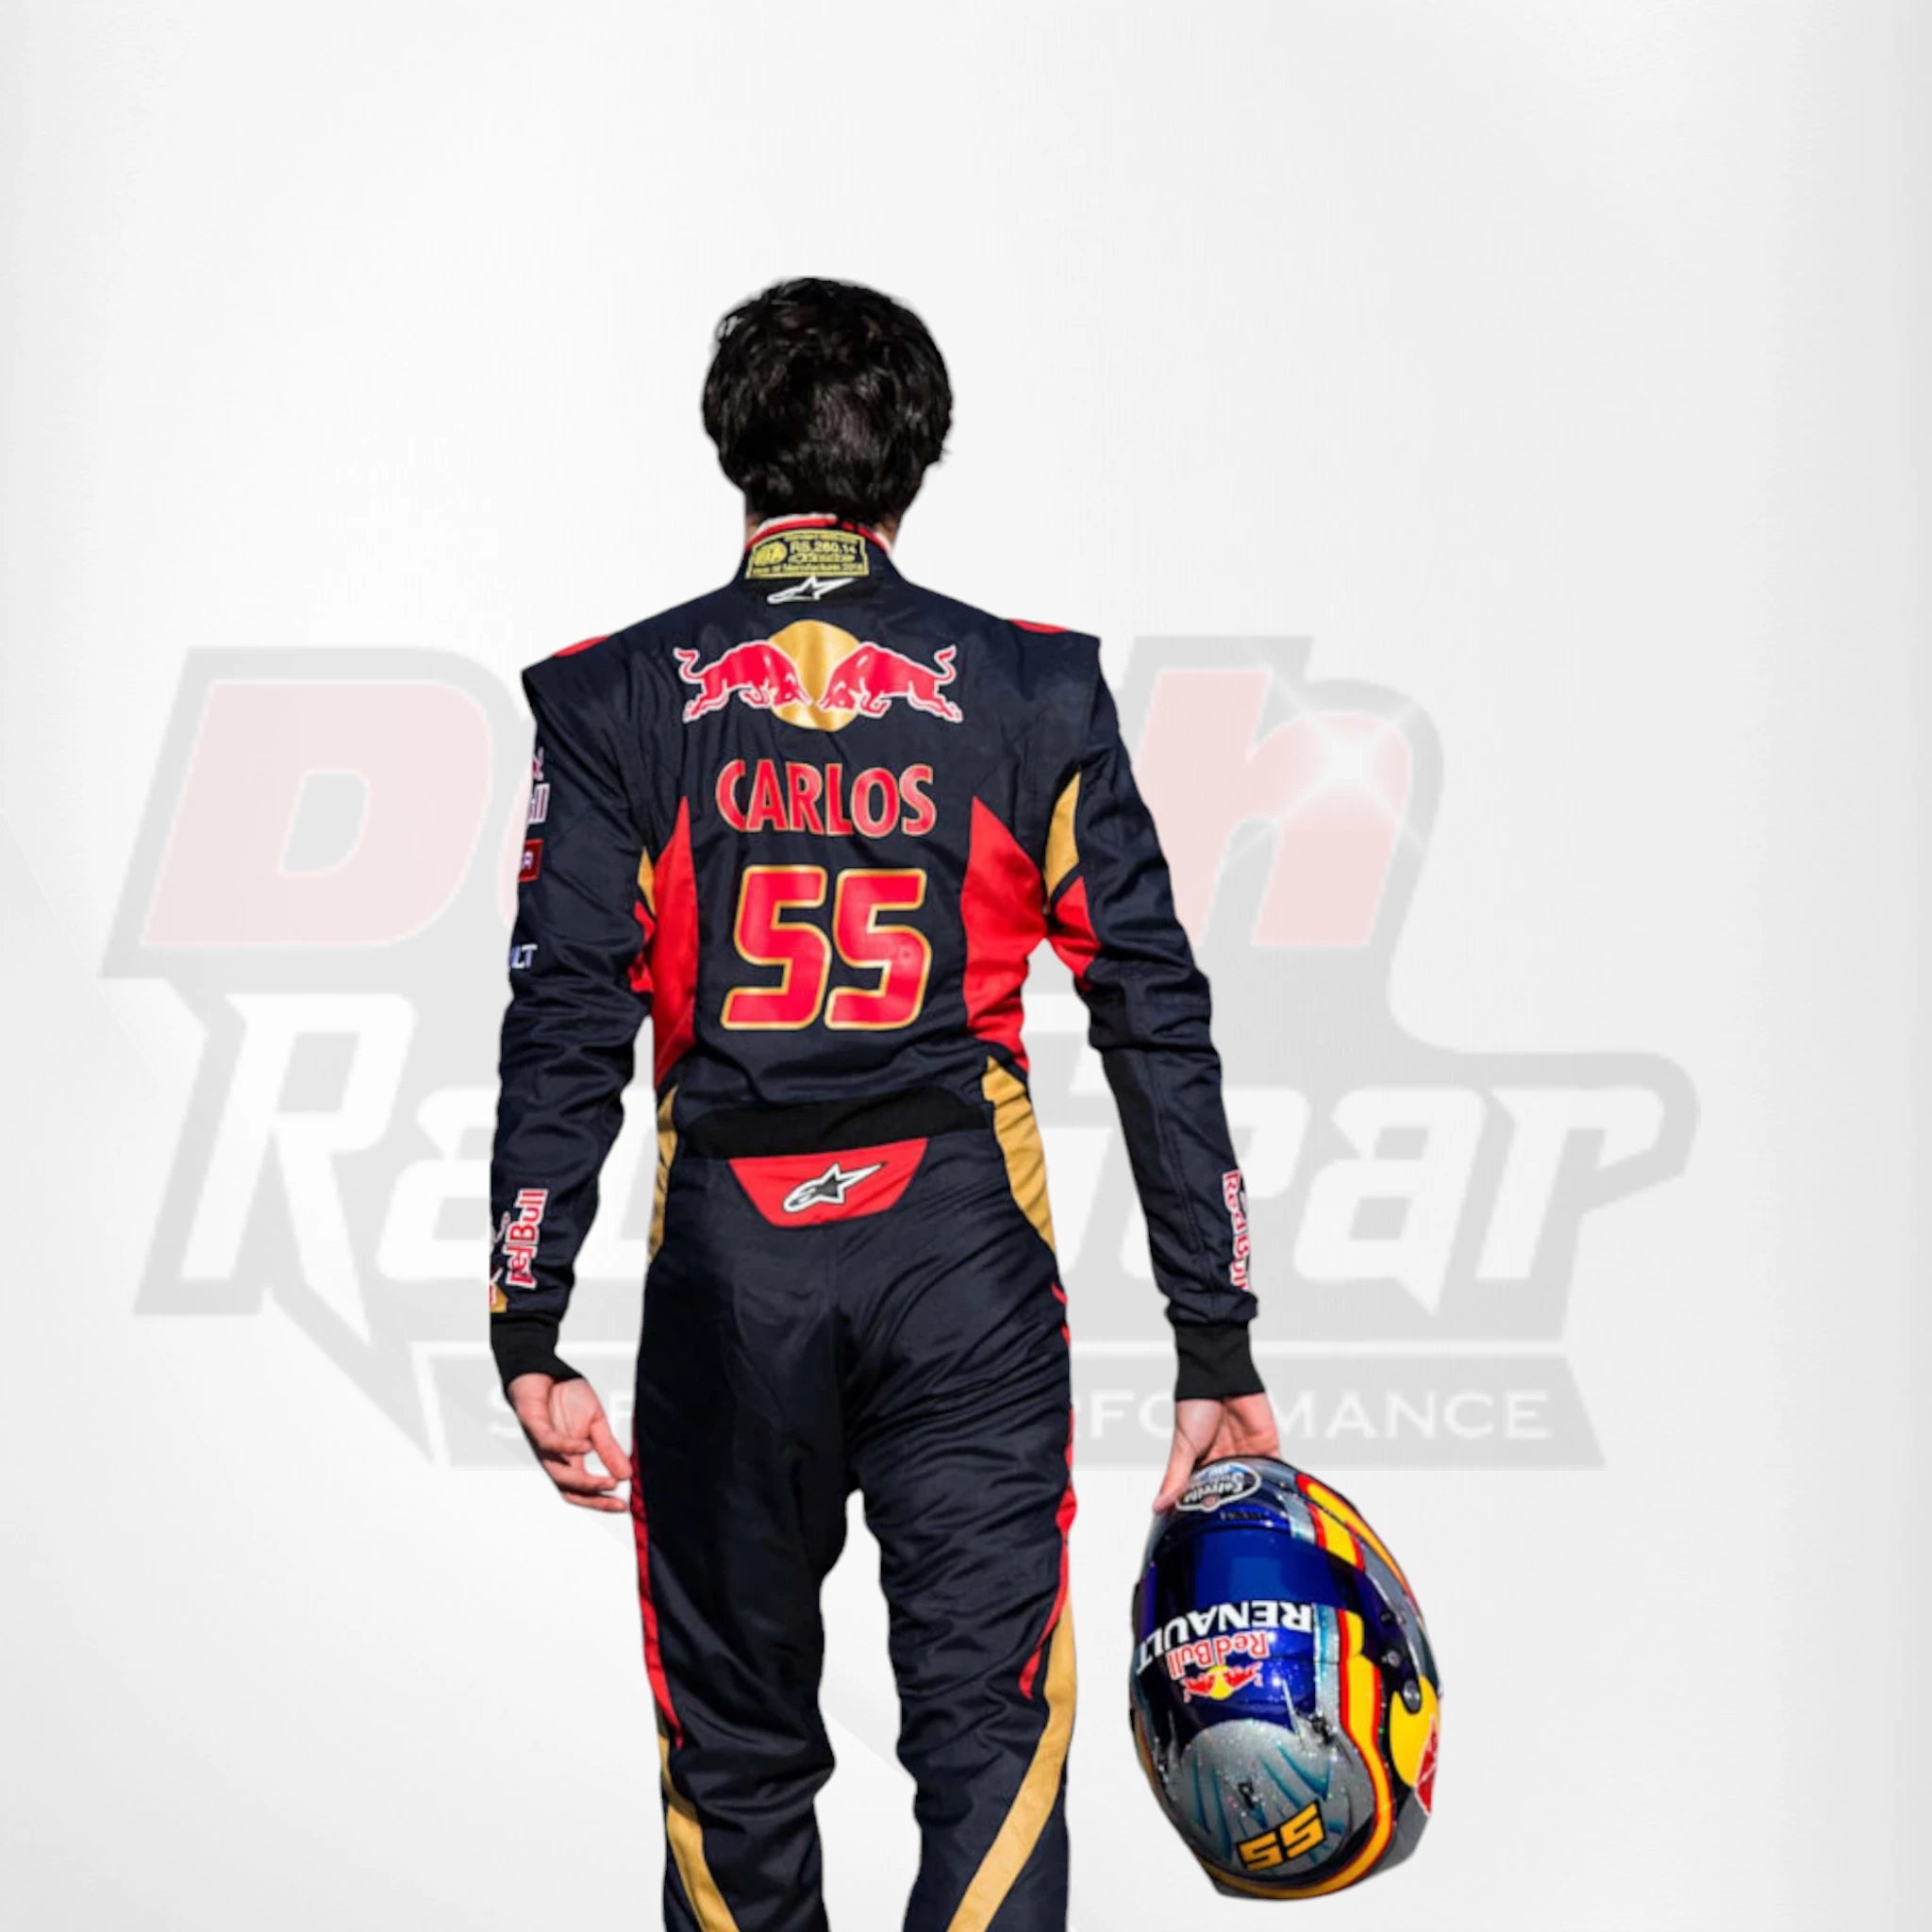 2015 Red Bull Max Verstappen F1 Race Suit